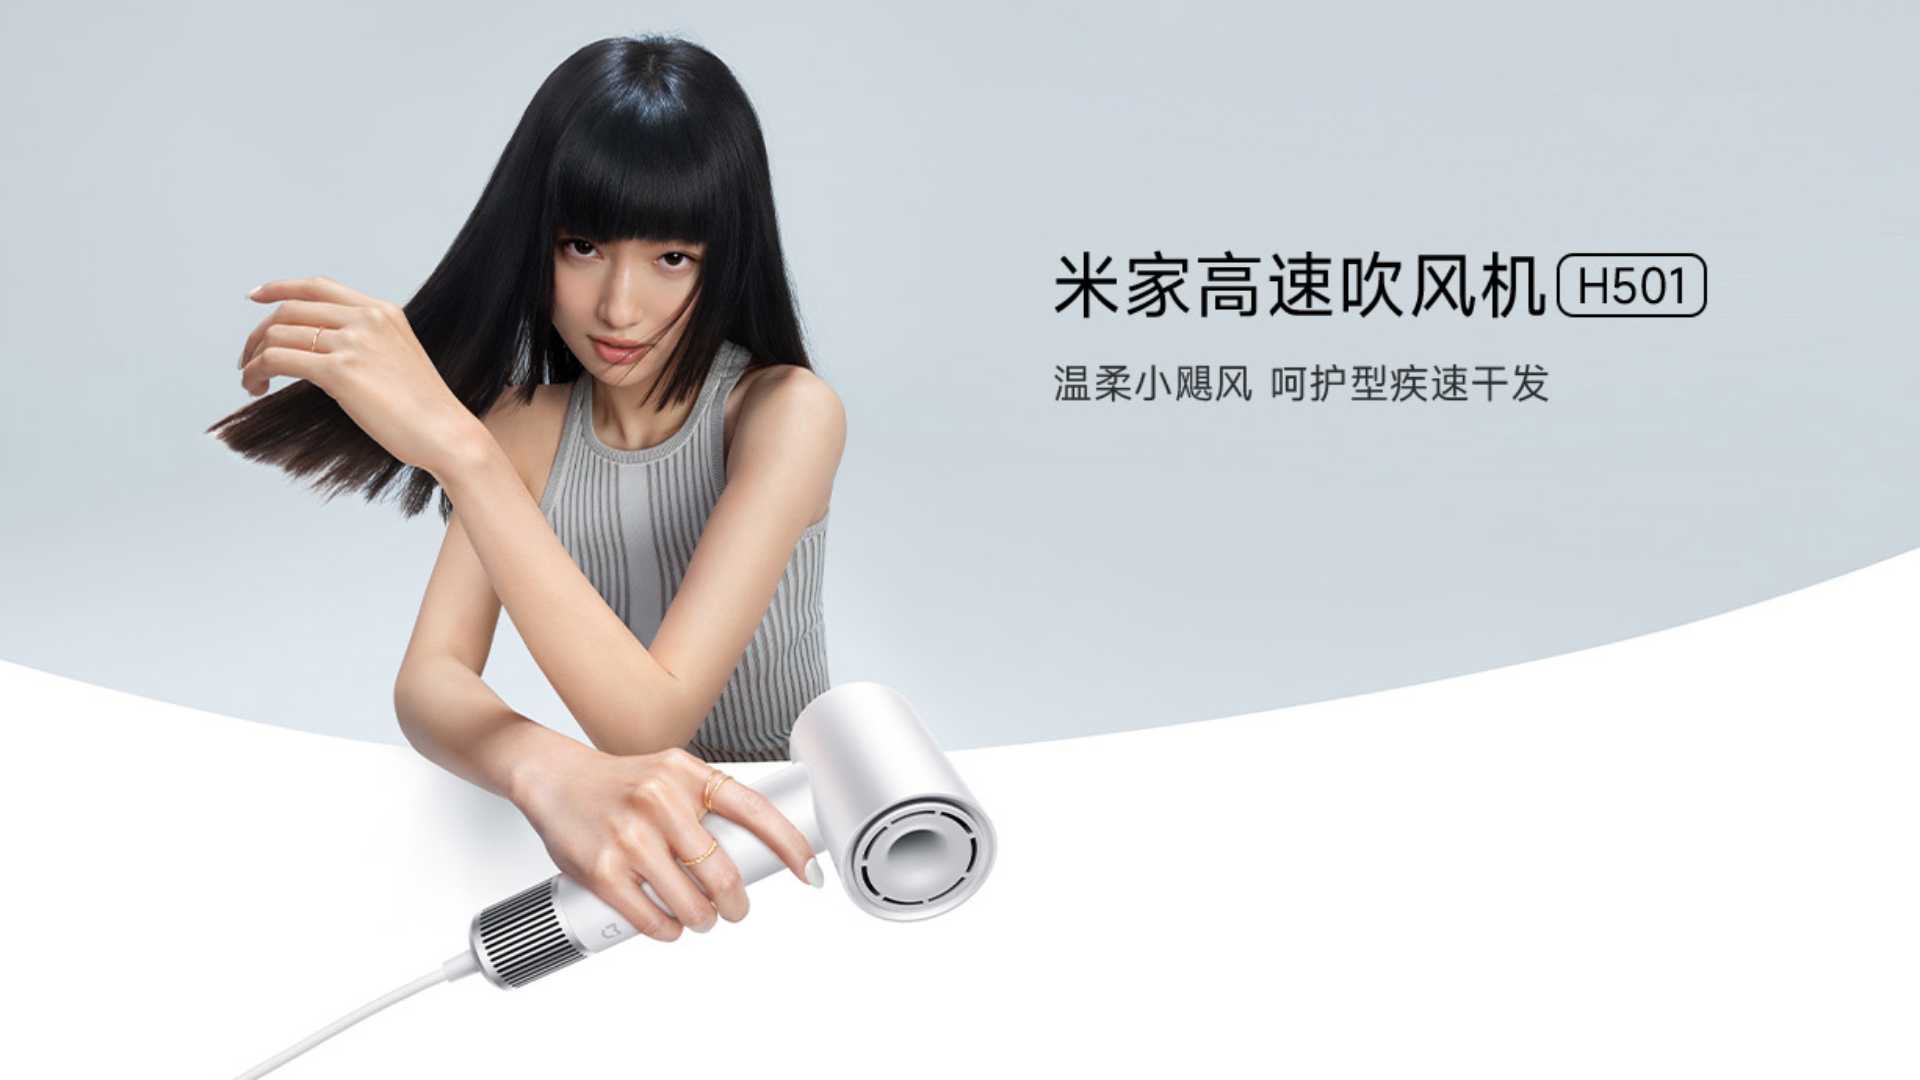 Capelli asciutti in un attimo con il nuovo Xiaomi Mijia High Speed Hair  Dryer H501 